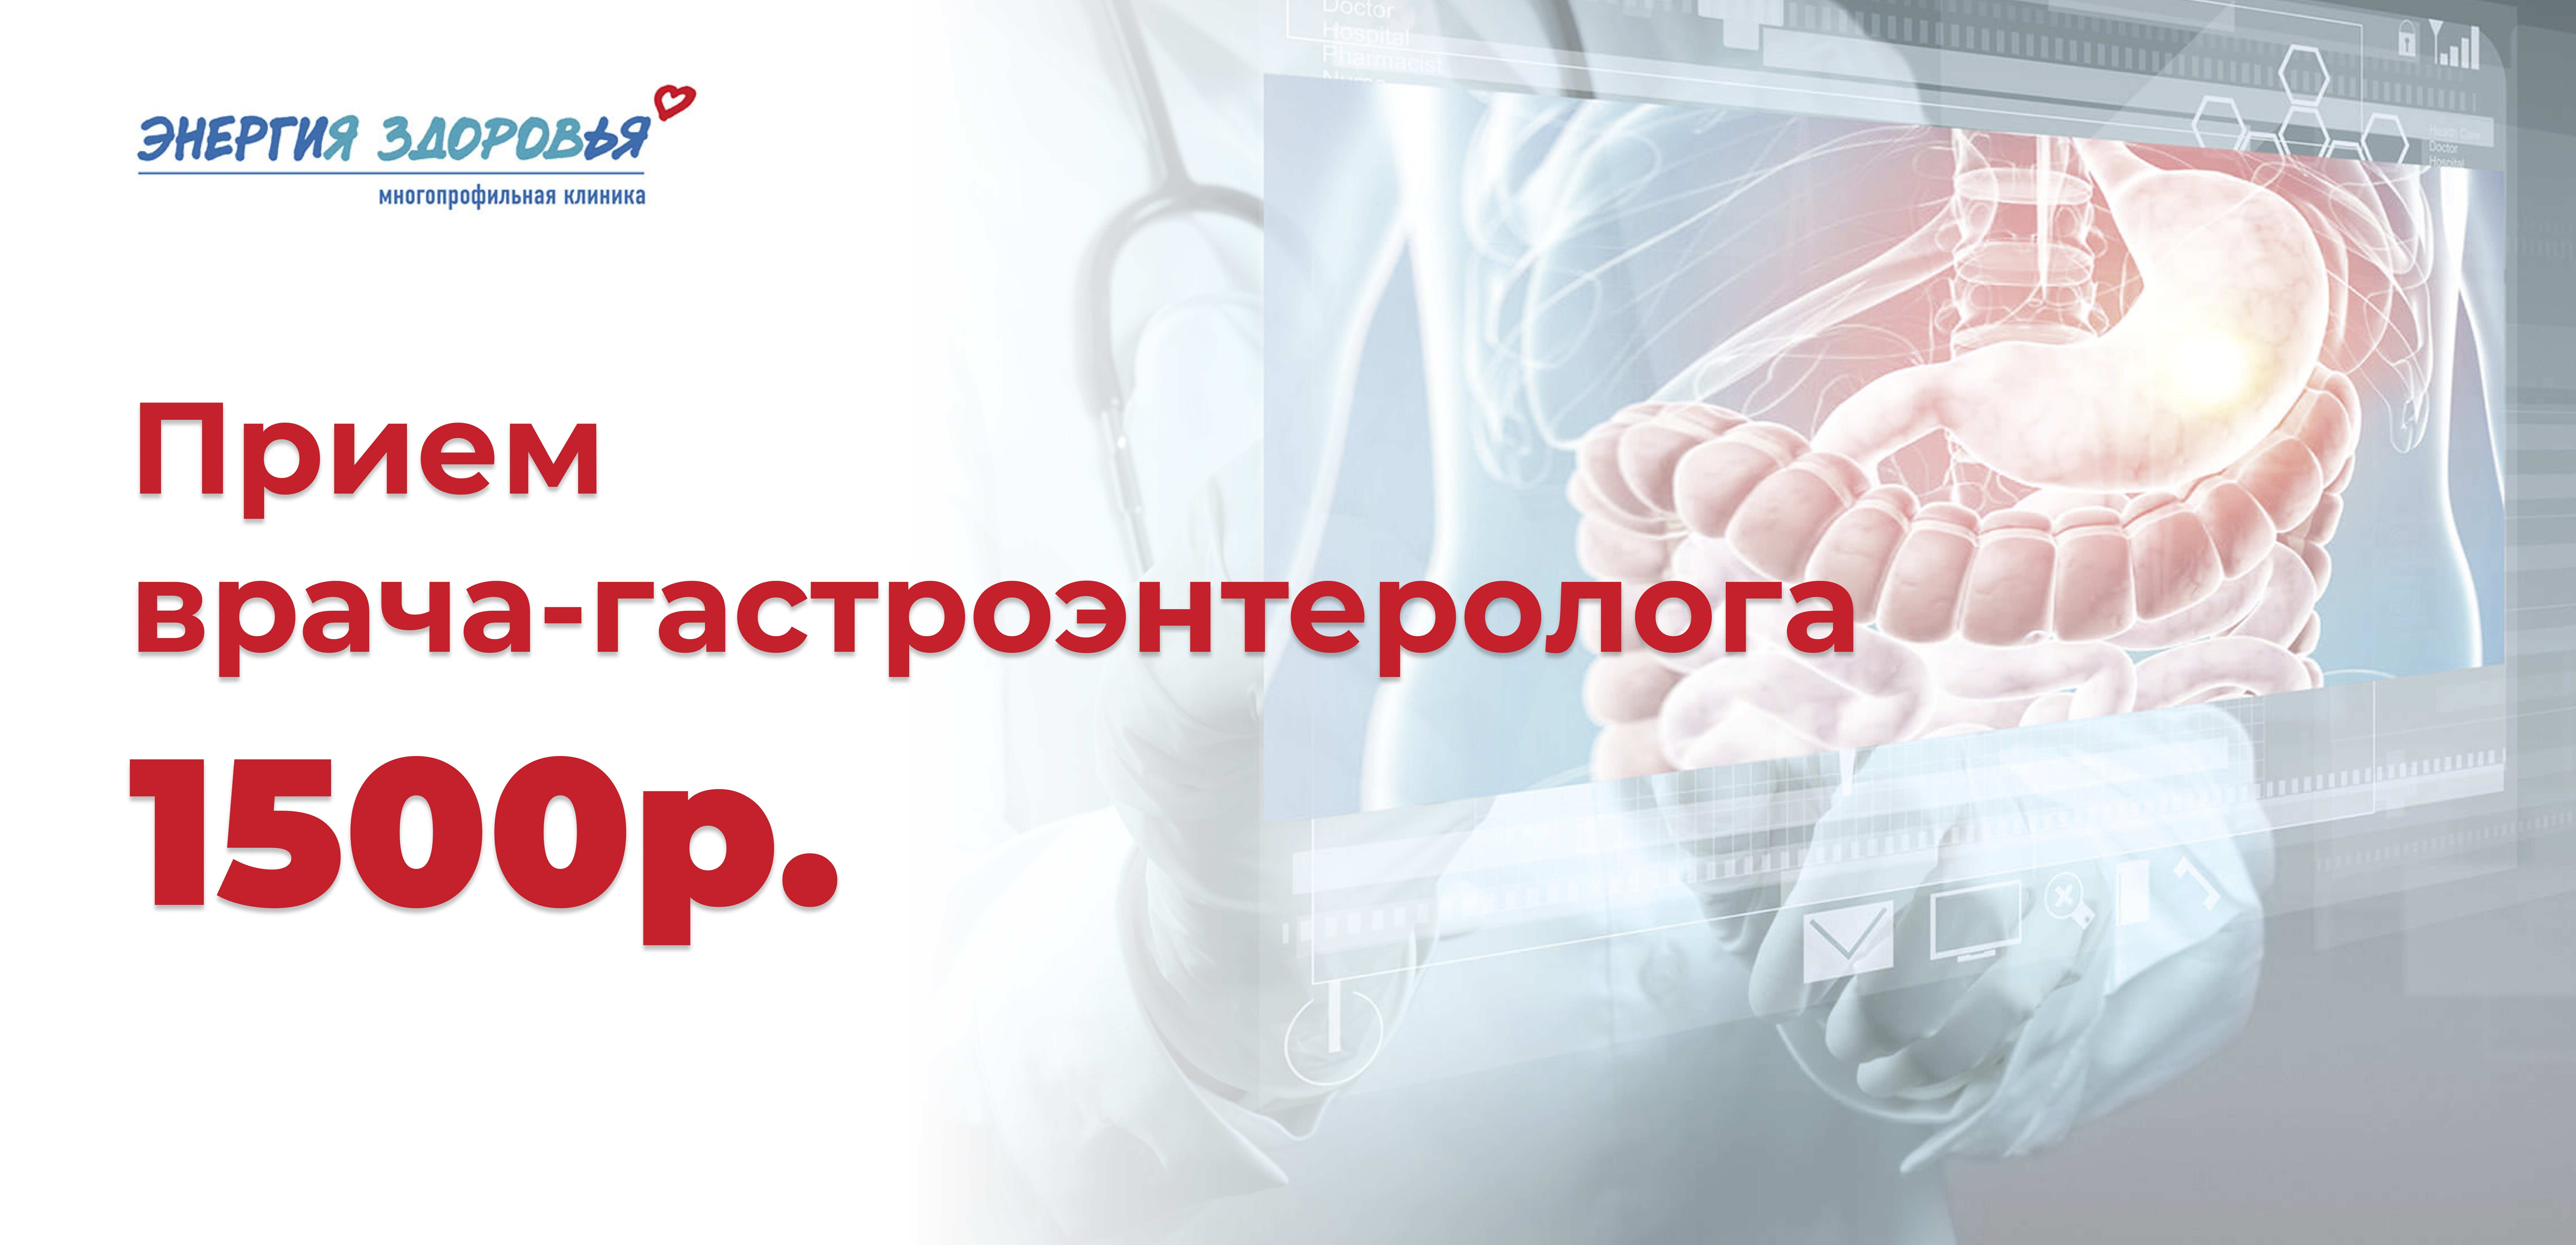 В январе прием врача-гастроэнтеролога всего за 1500 рублей!